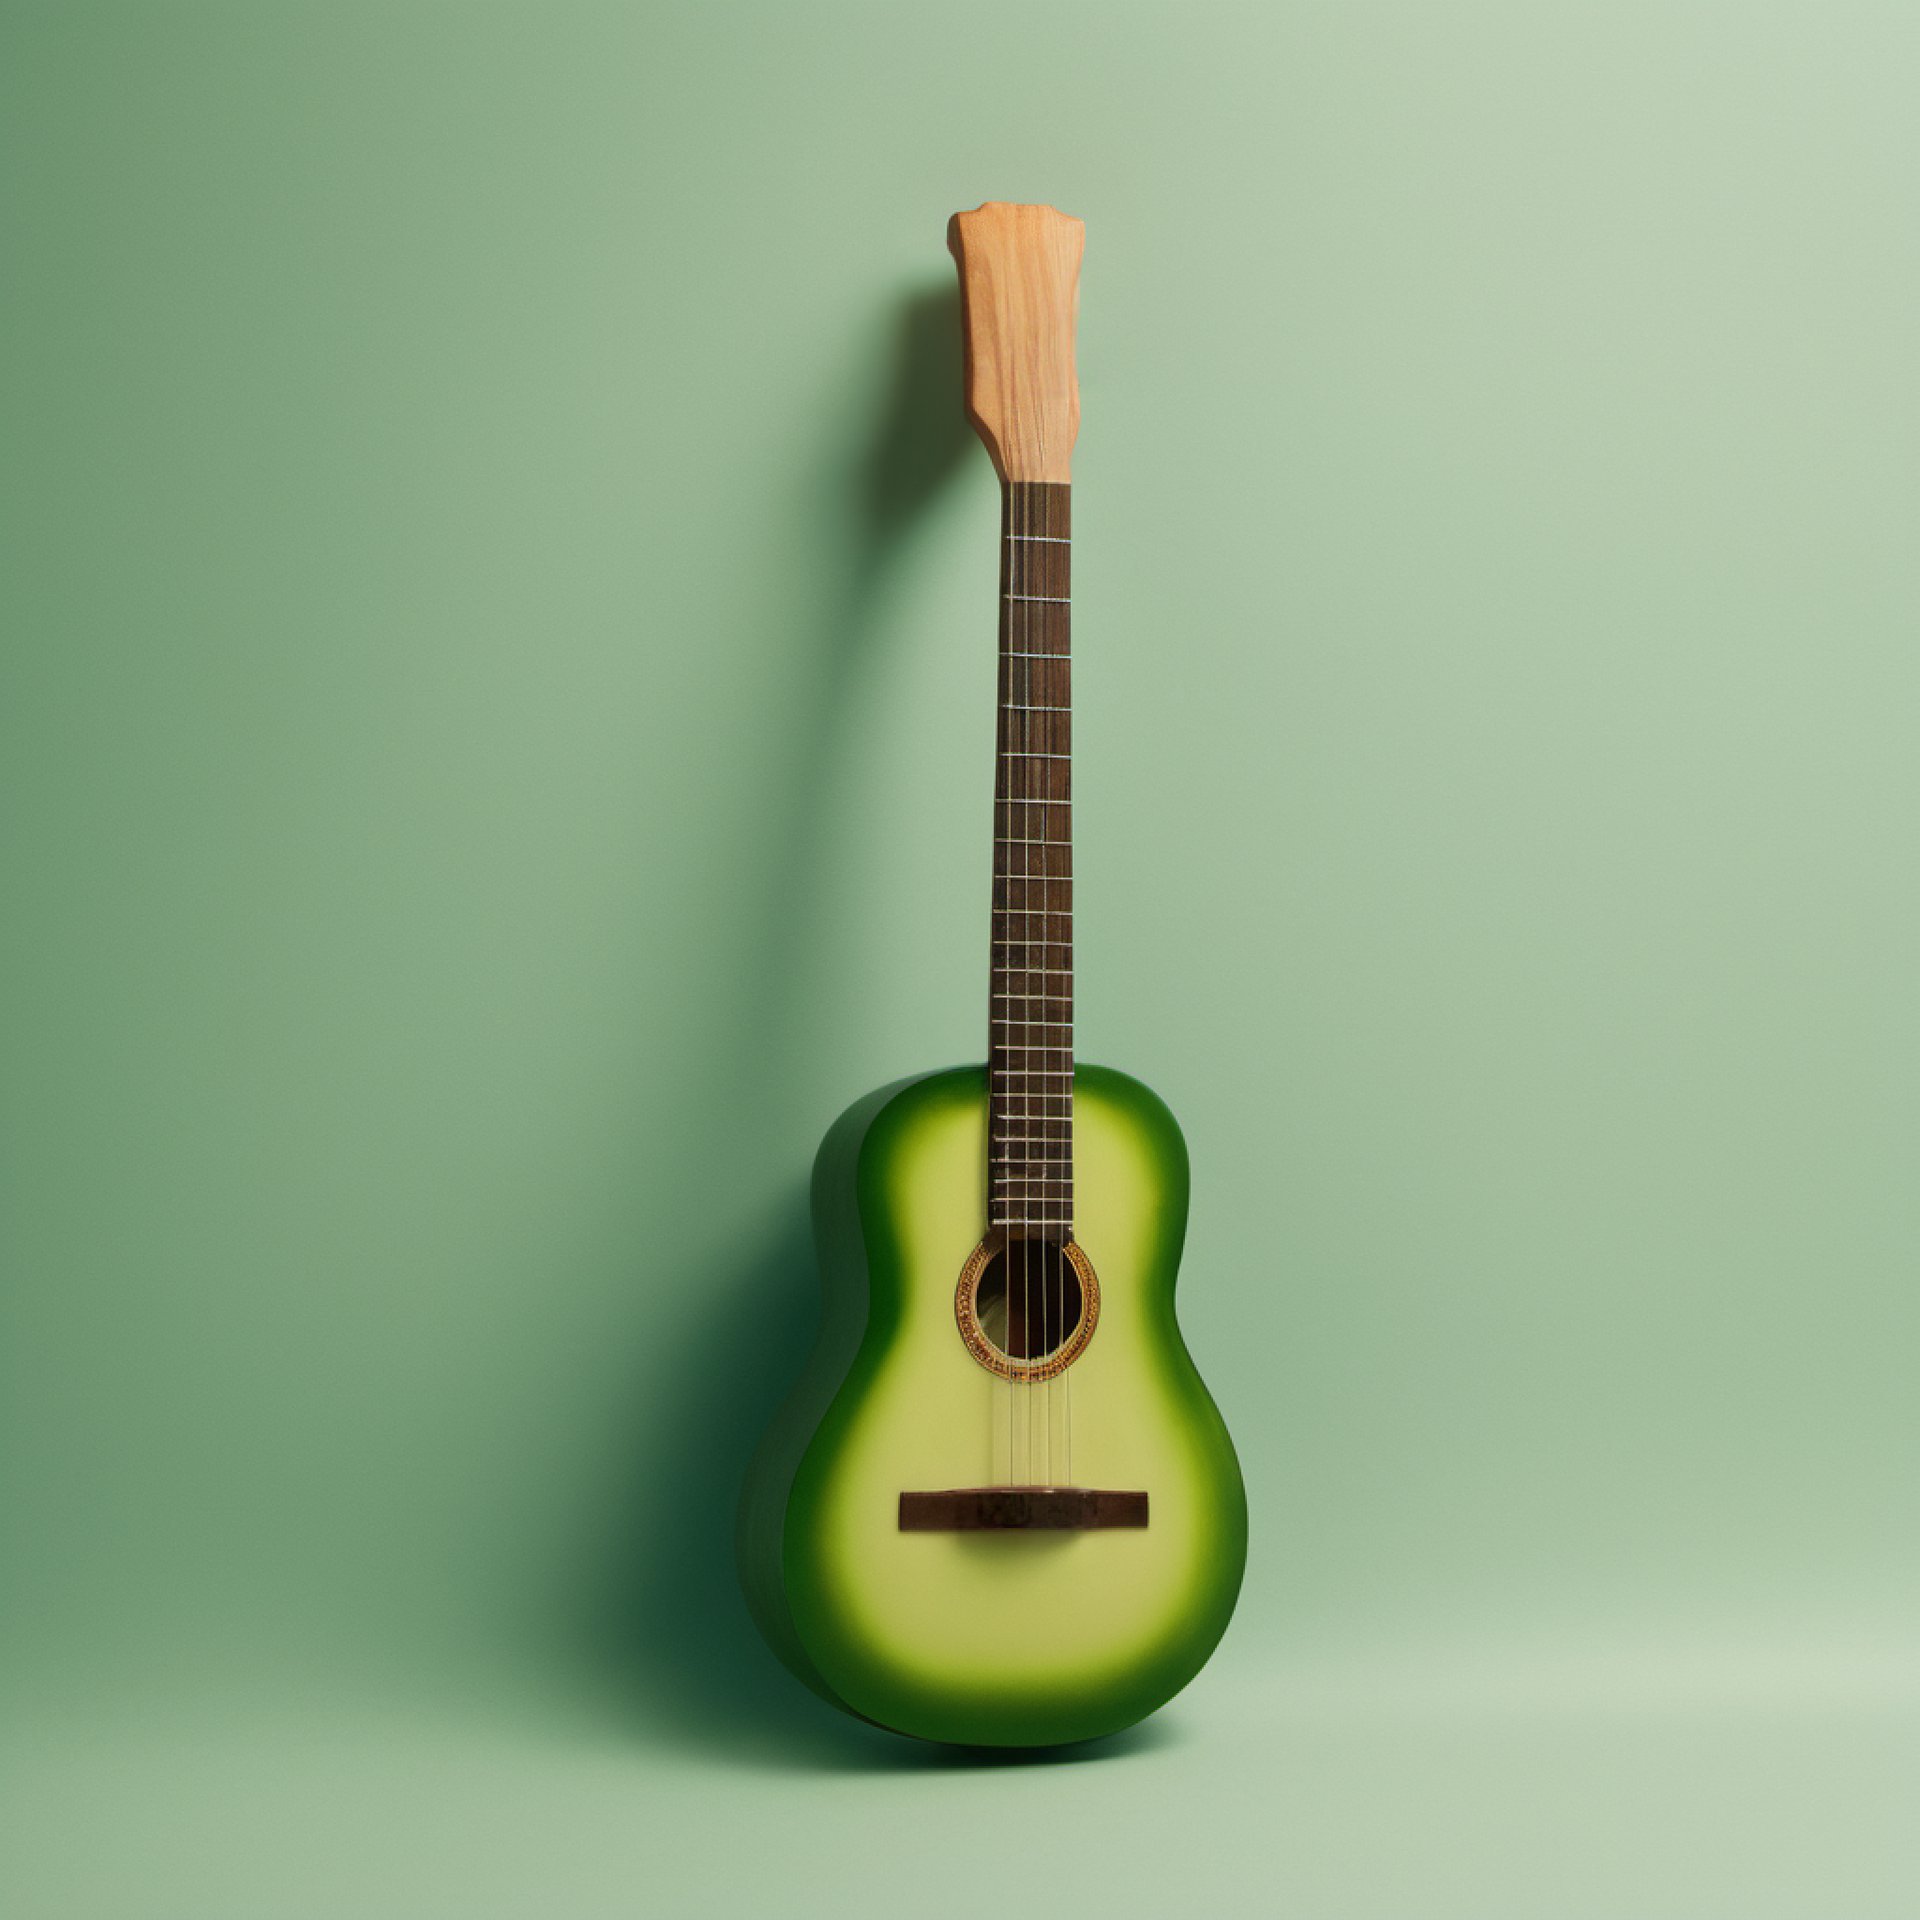 Avocado guitar